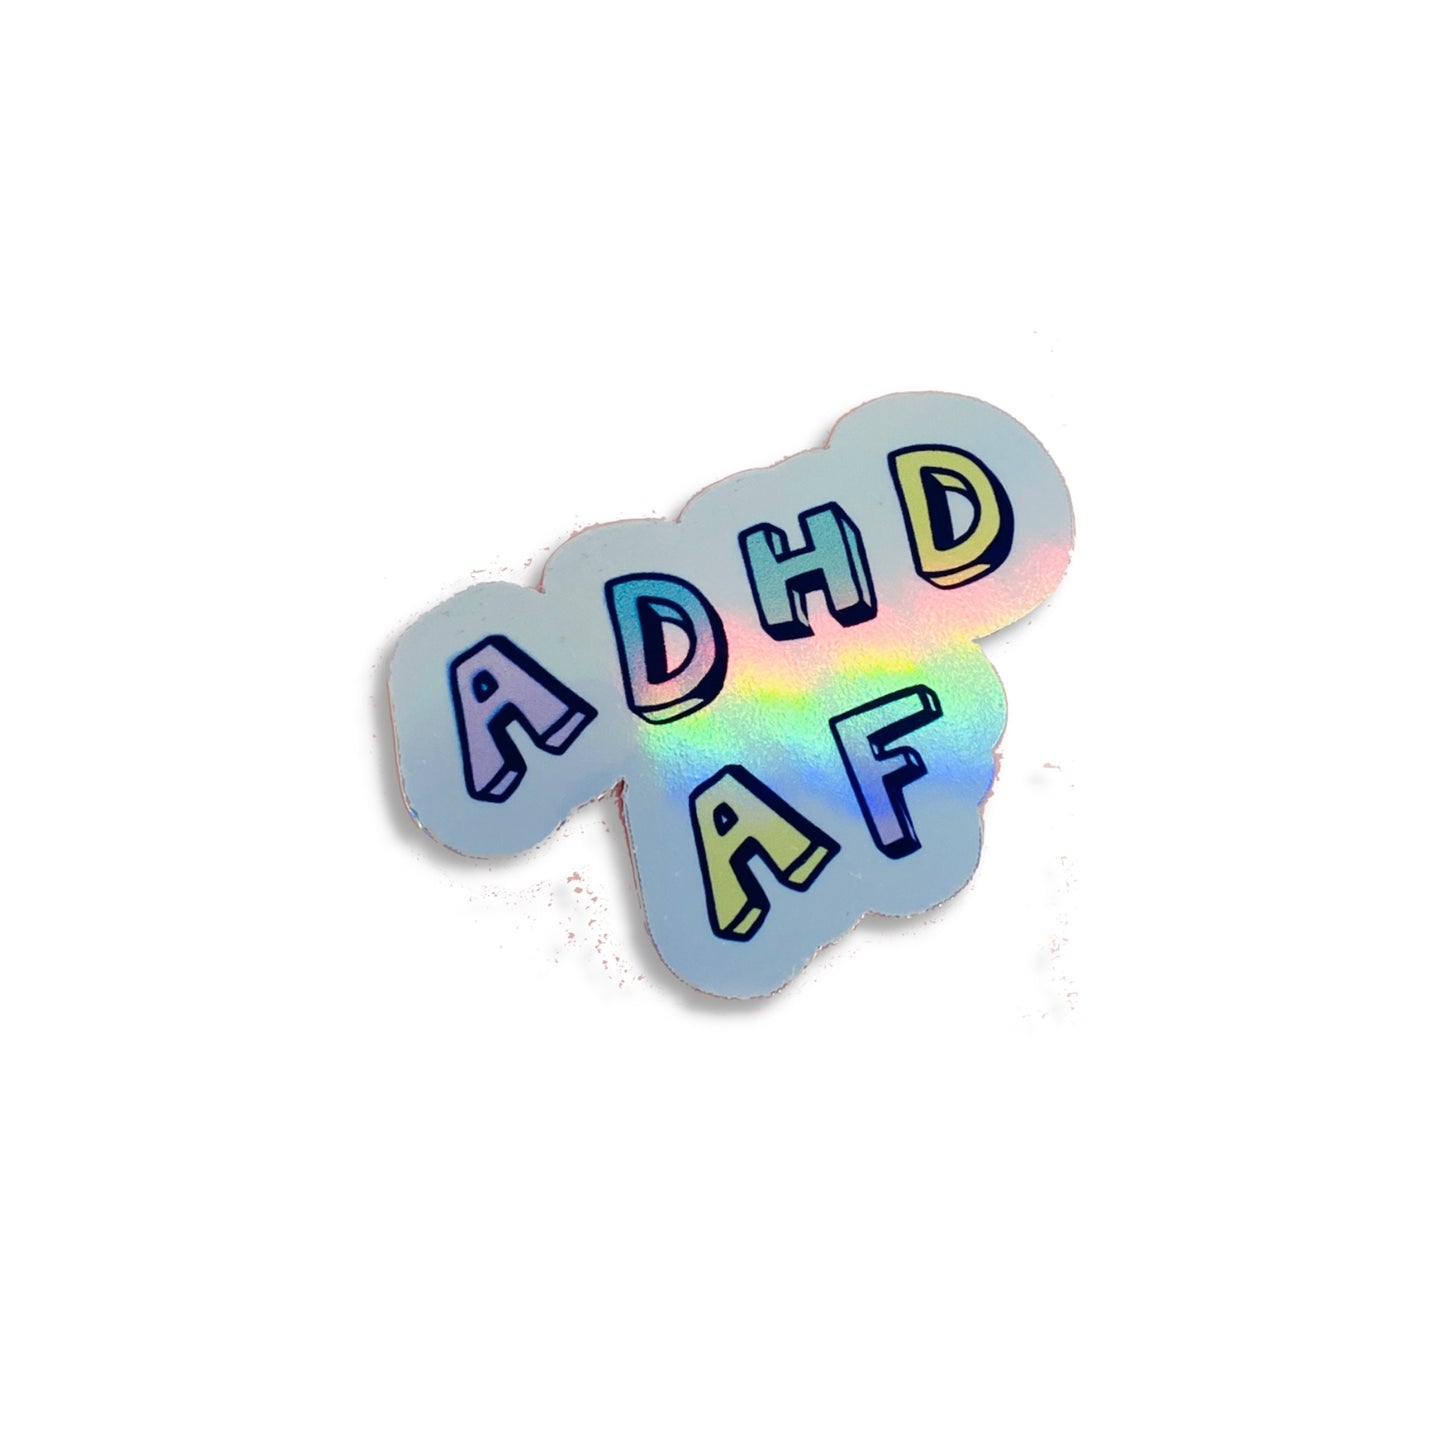 ADHD af acceptance sticker